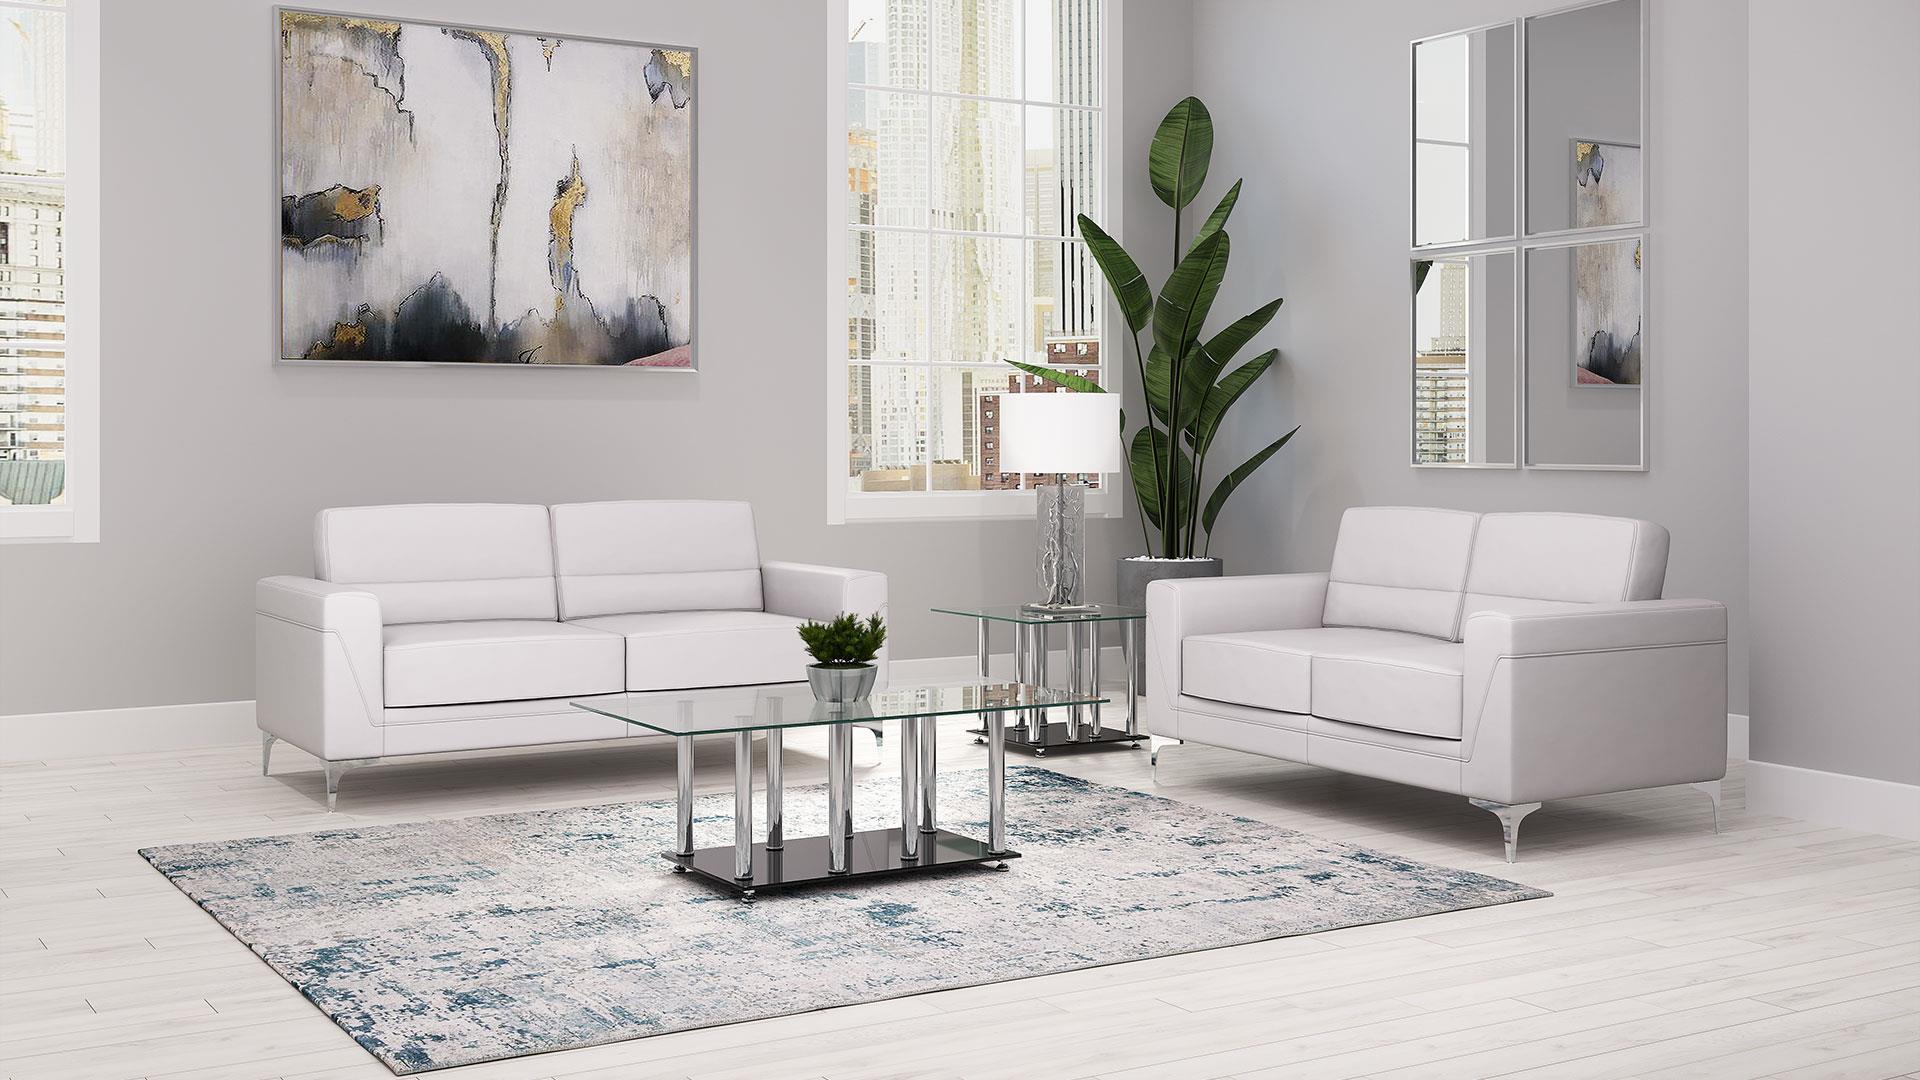 

    
U6109 Light Grey PVC Contemporary Design Sofa Set 2Pcs Global USA
